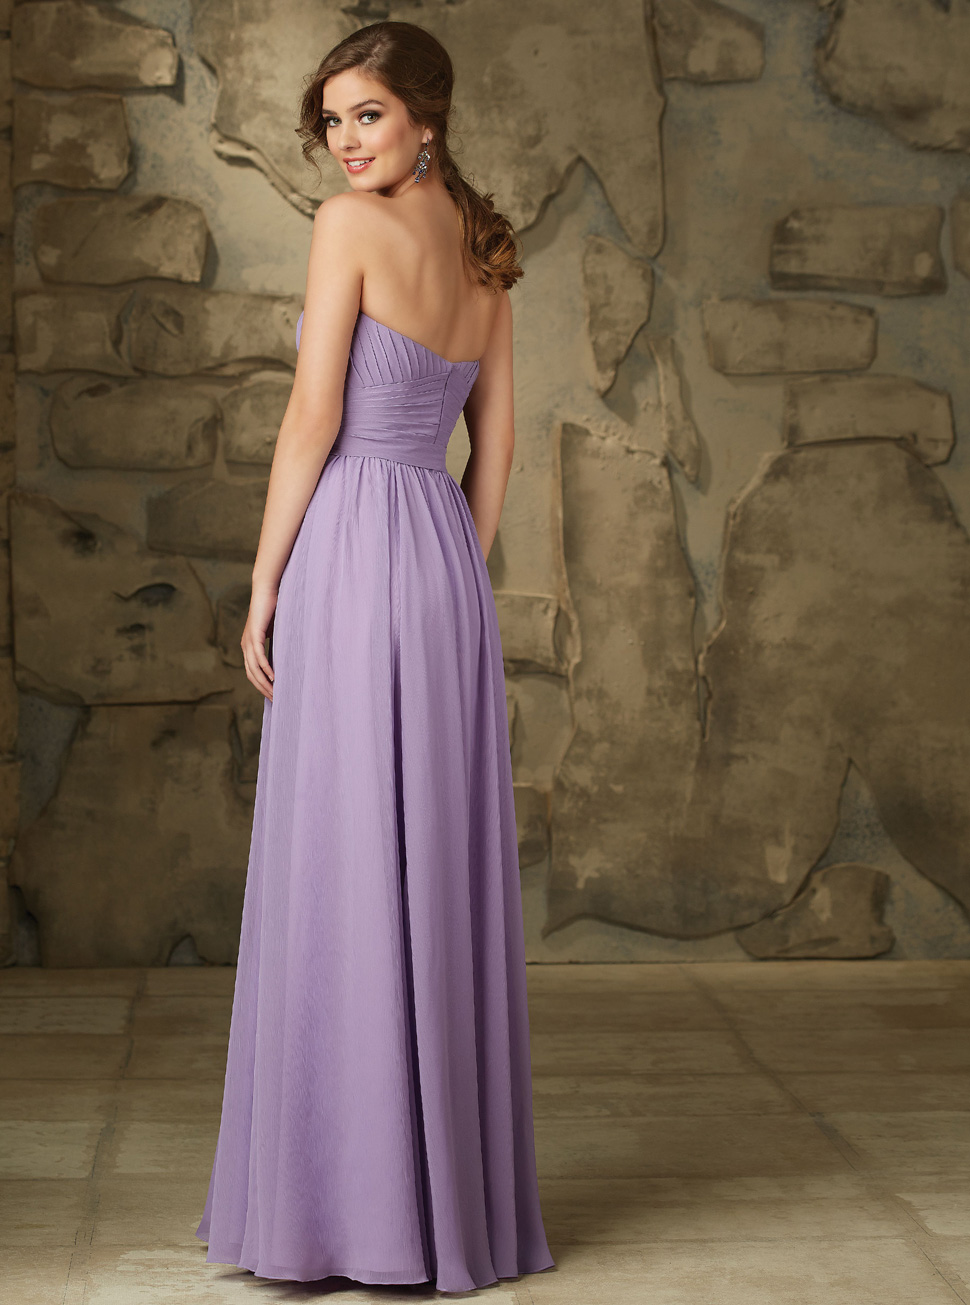 欧式雪纺抹胸礼服批发定制新款新娘婚礼紫色长裙女装LIFU6064